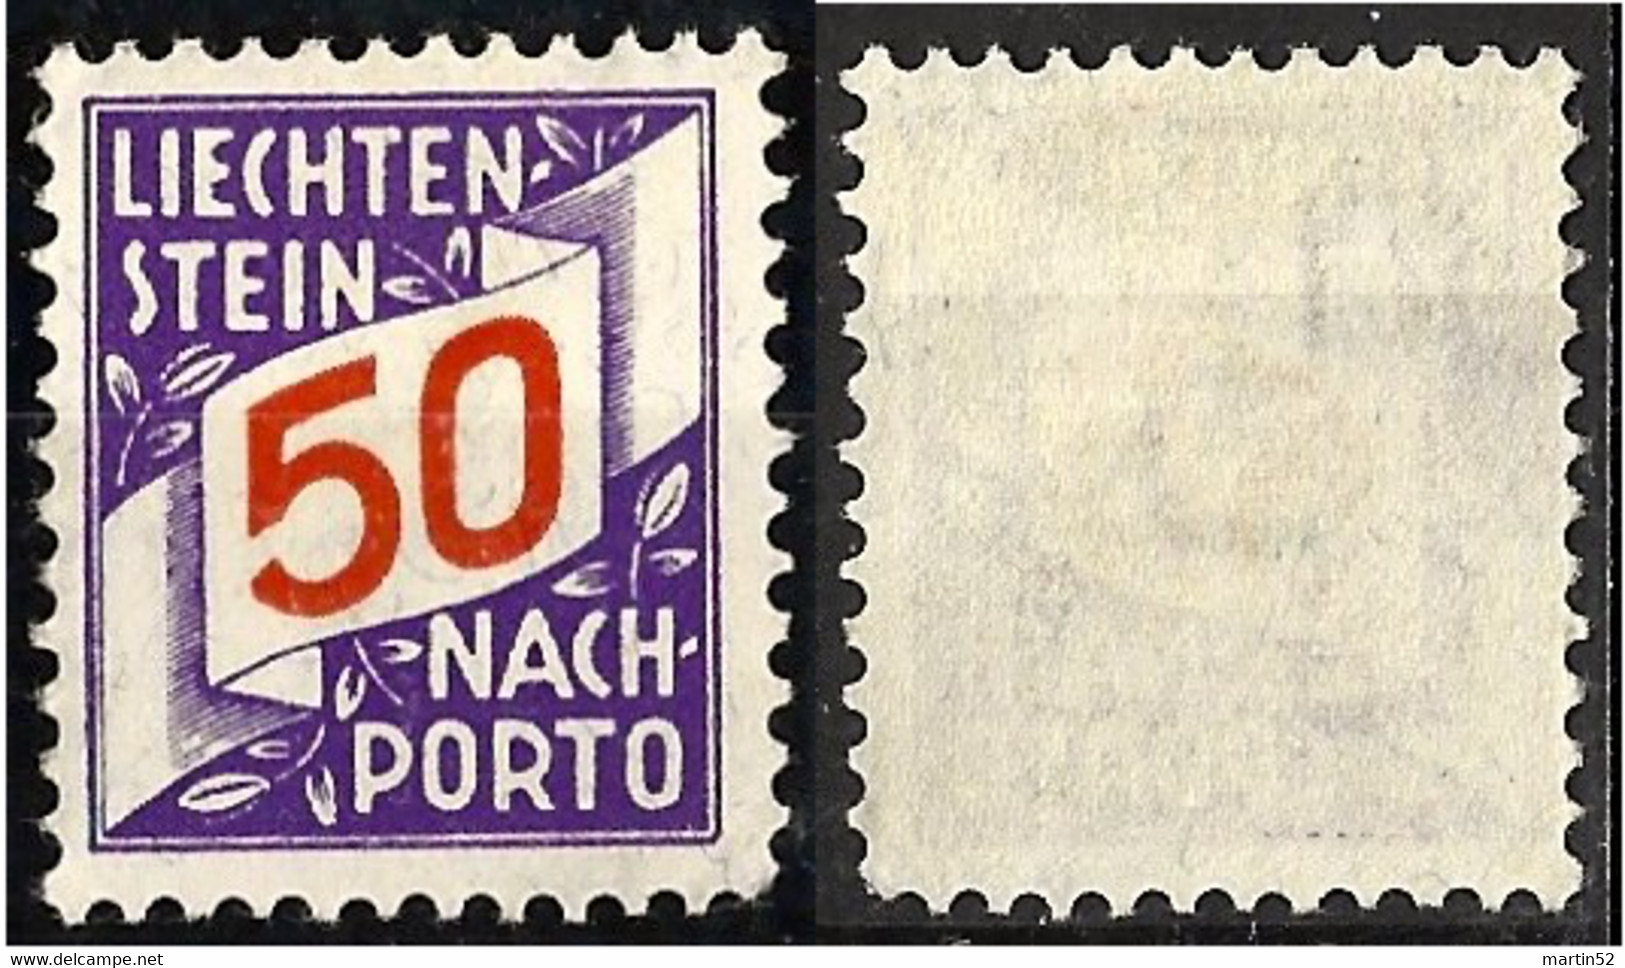 Liechtenstein 1928: ERSTE NACHPORTO-Marke N° 20 (50 Rp) In Schweizer Währung ** Postfrisch MNH (Zu CHF 45.00) - Strafportzegels